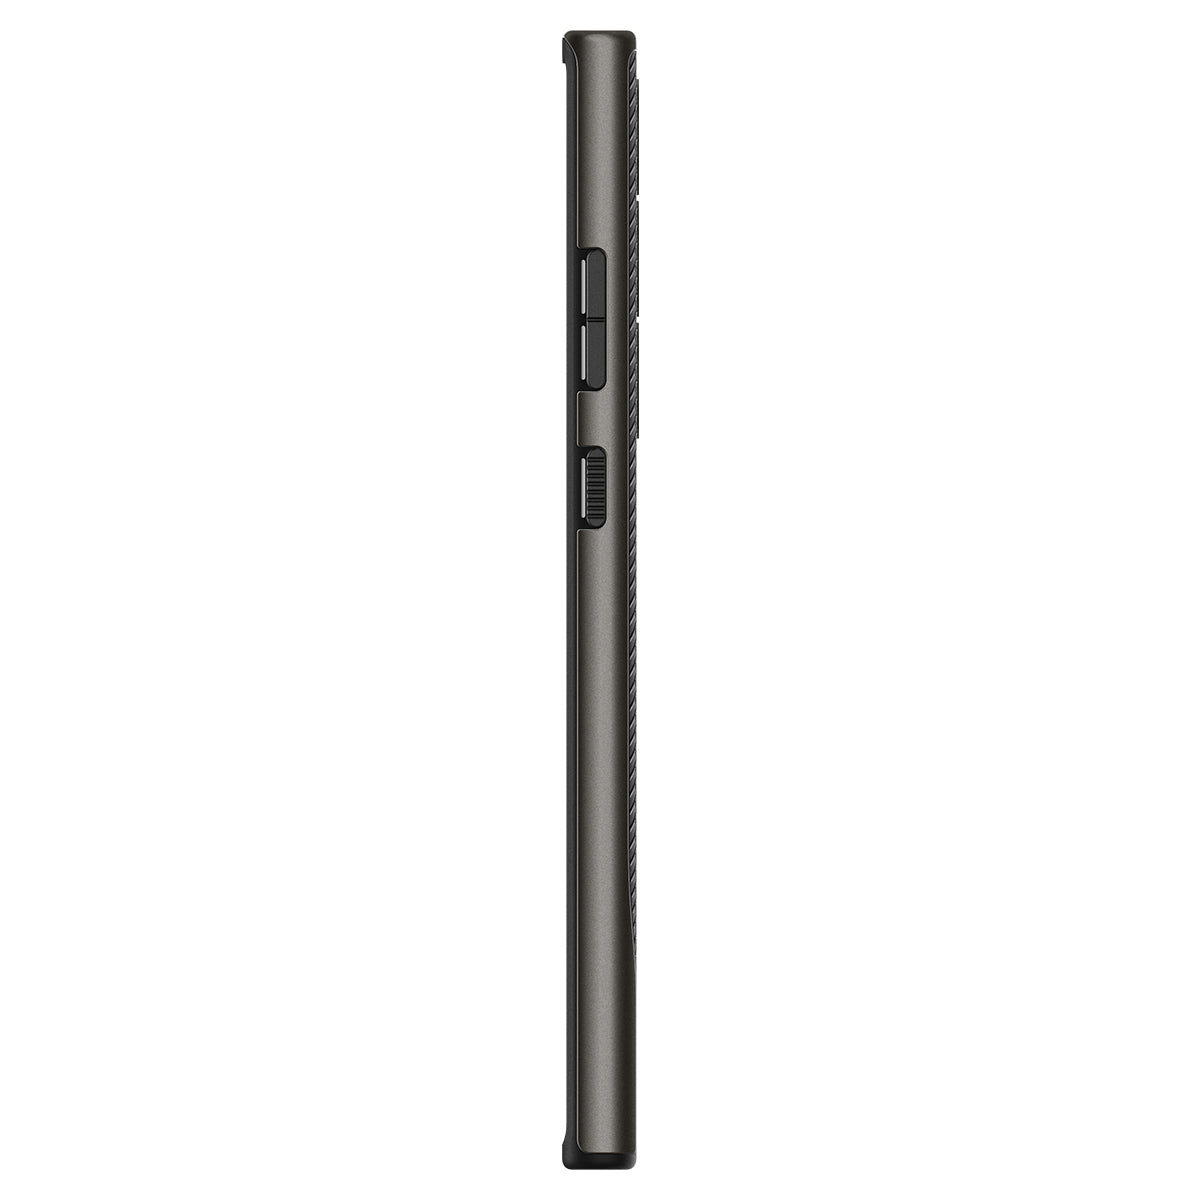 ỐP lưng Spigen Ultra Neo Hybrid cho Samsung Galaxy S23 Ultra - Thiết kế mỏng nhẹ, chống sốc, hỗ trợ sạc không dây, chống bẩn, viền camera cao - Hàng chính hãng